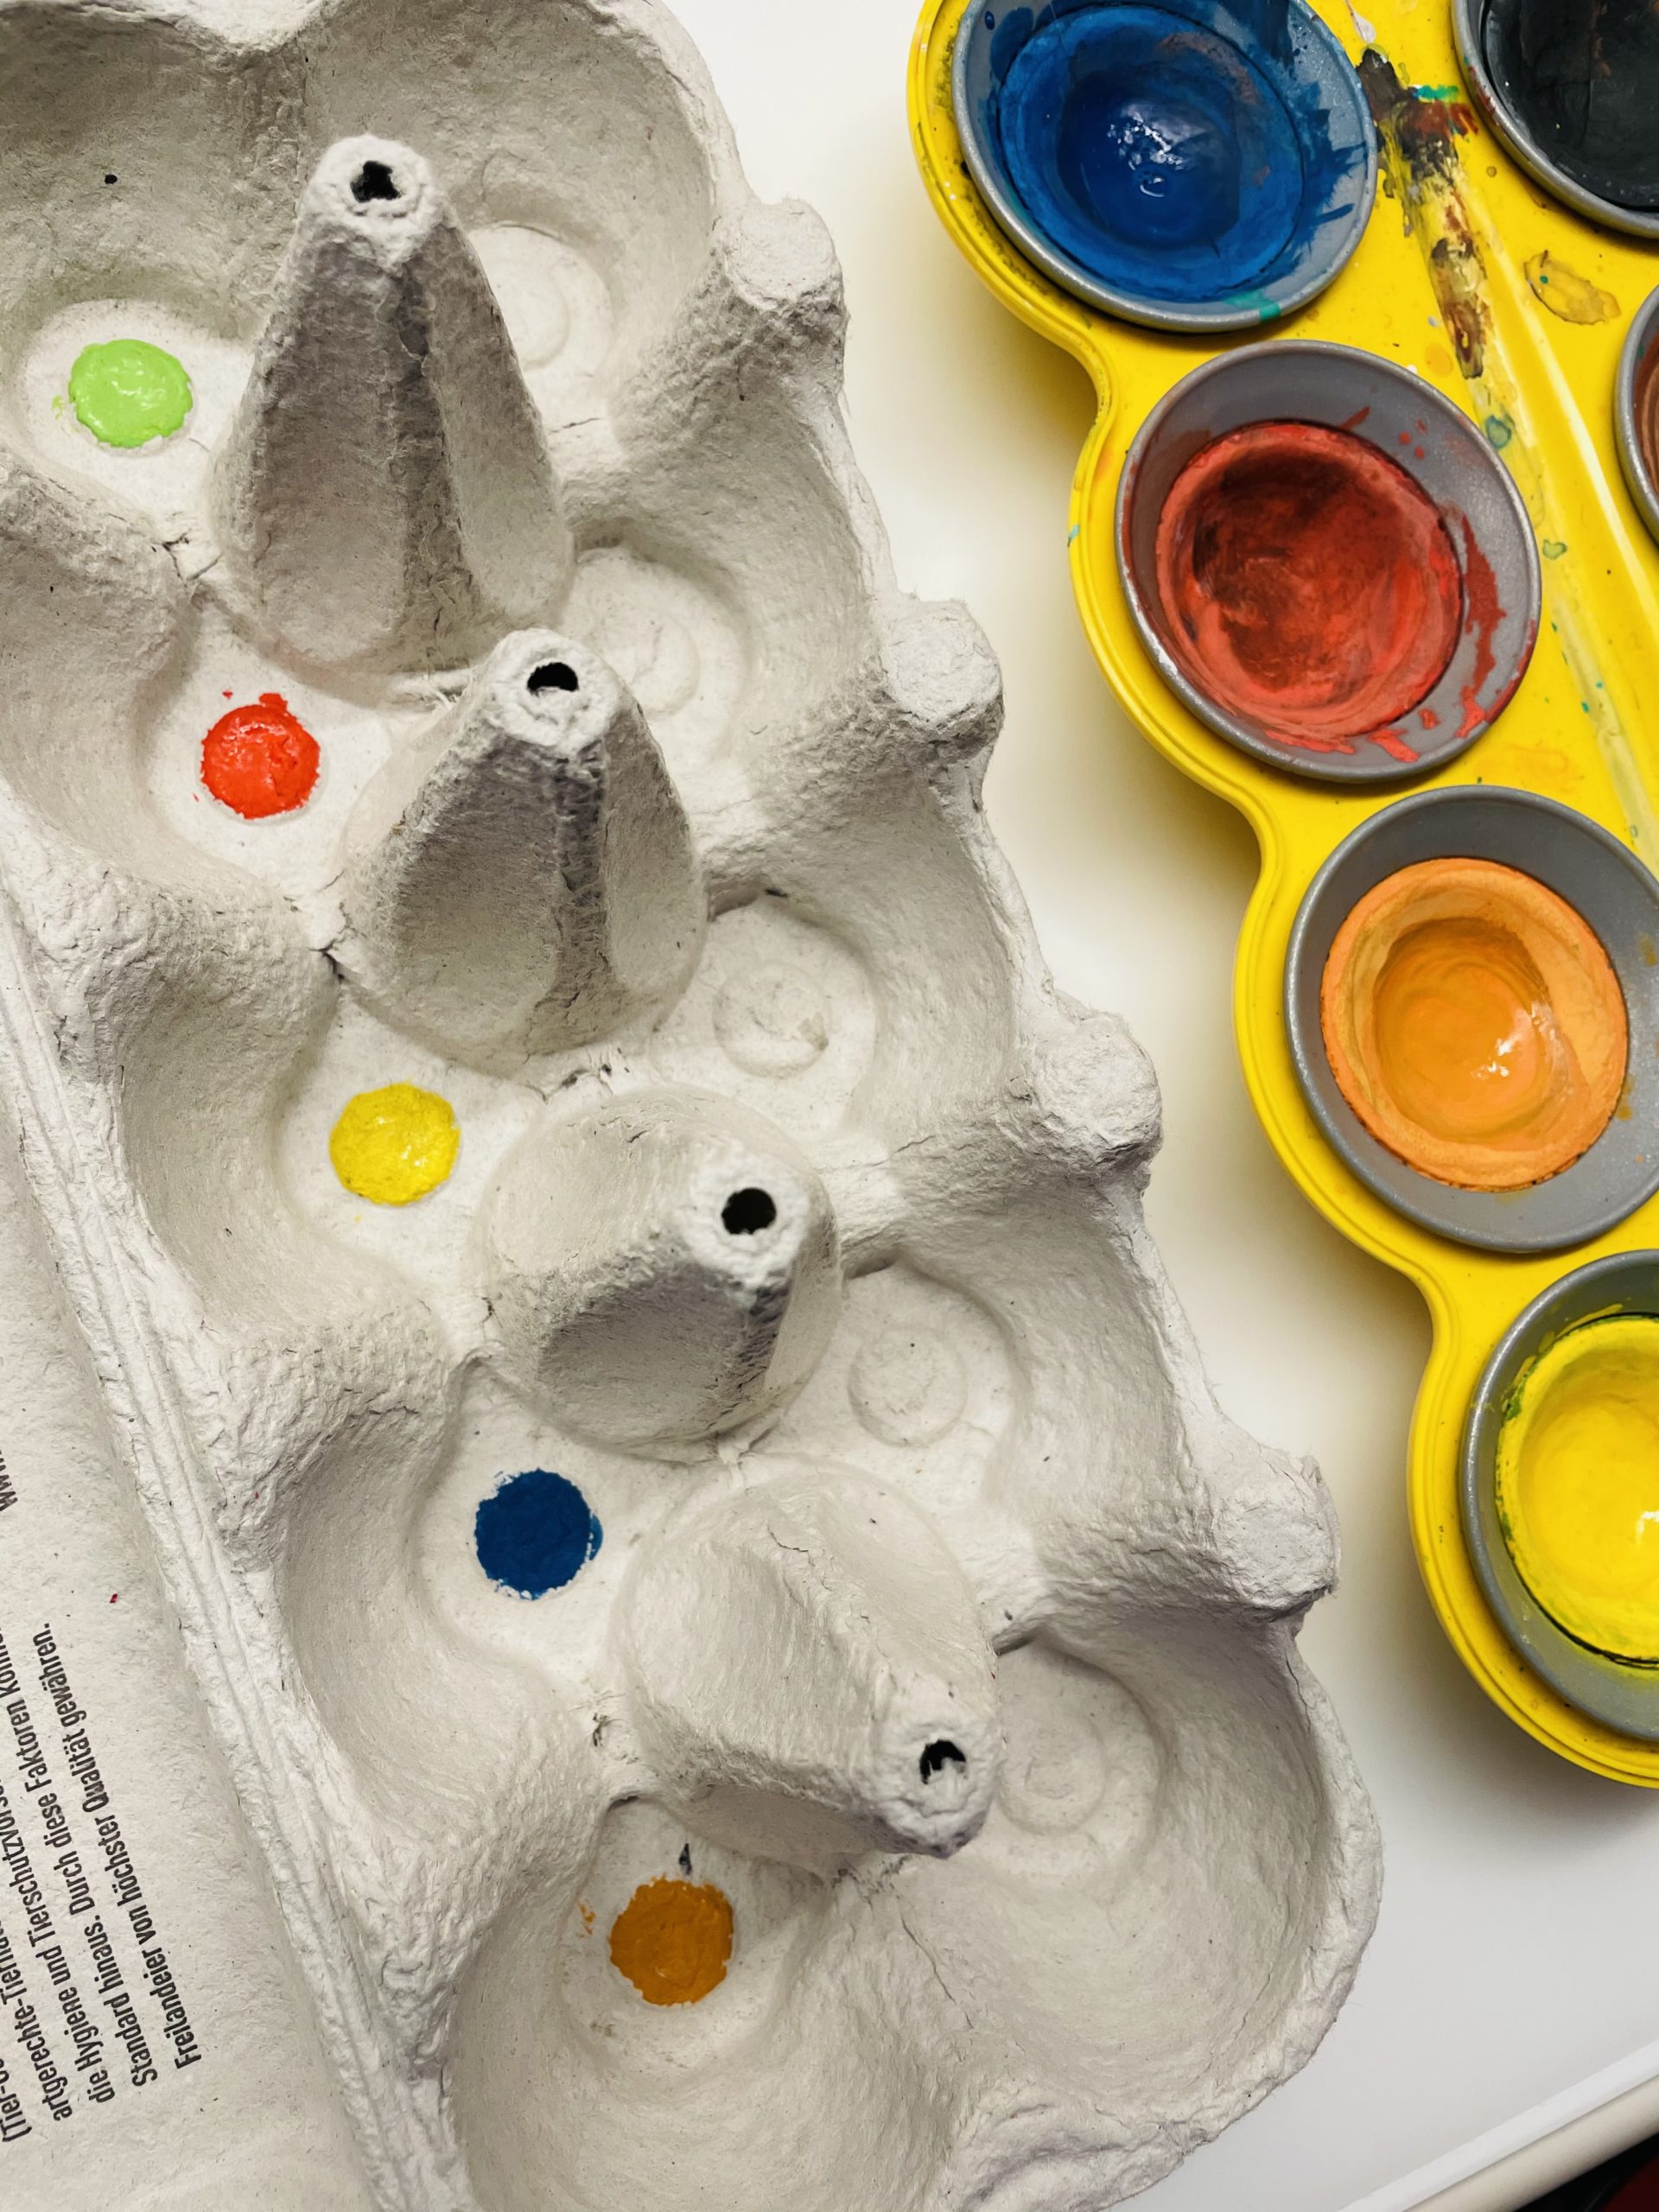 Bild zum Schritt 28 für das Bastel- und DIY-Abenteuer für Kinder: 'Malt die Farben auf, das lenkt die Kinder weniger vom...'